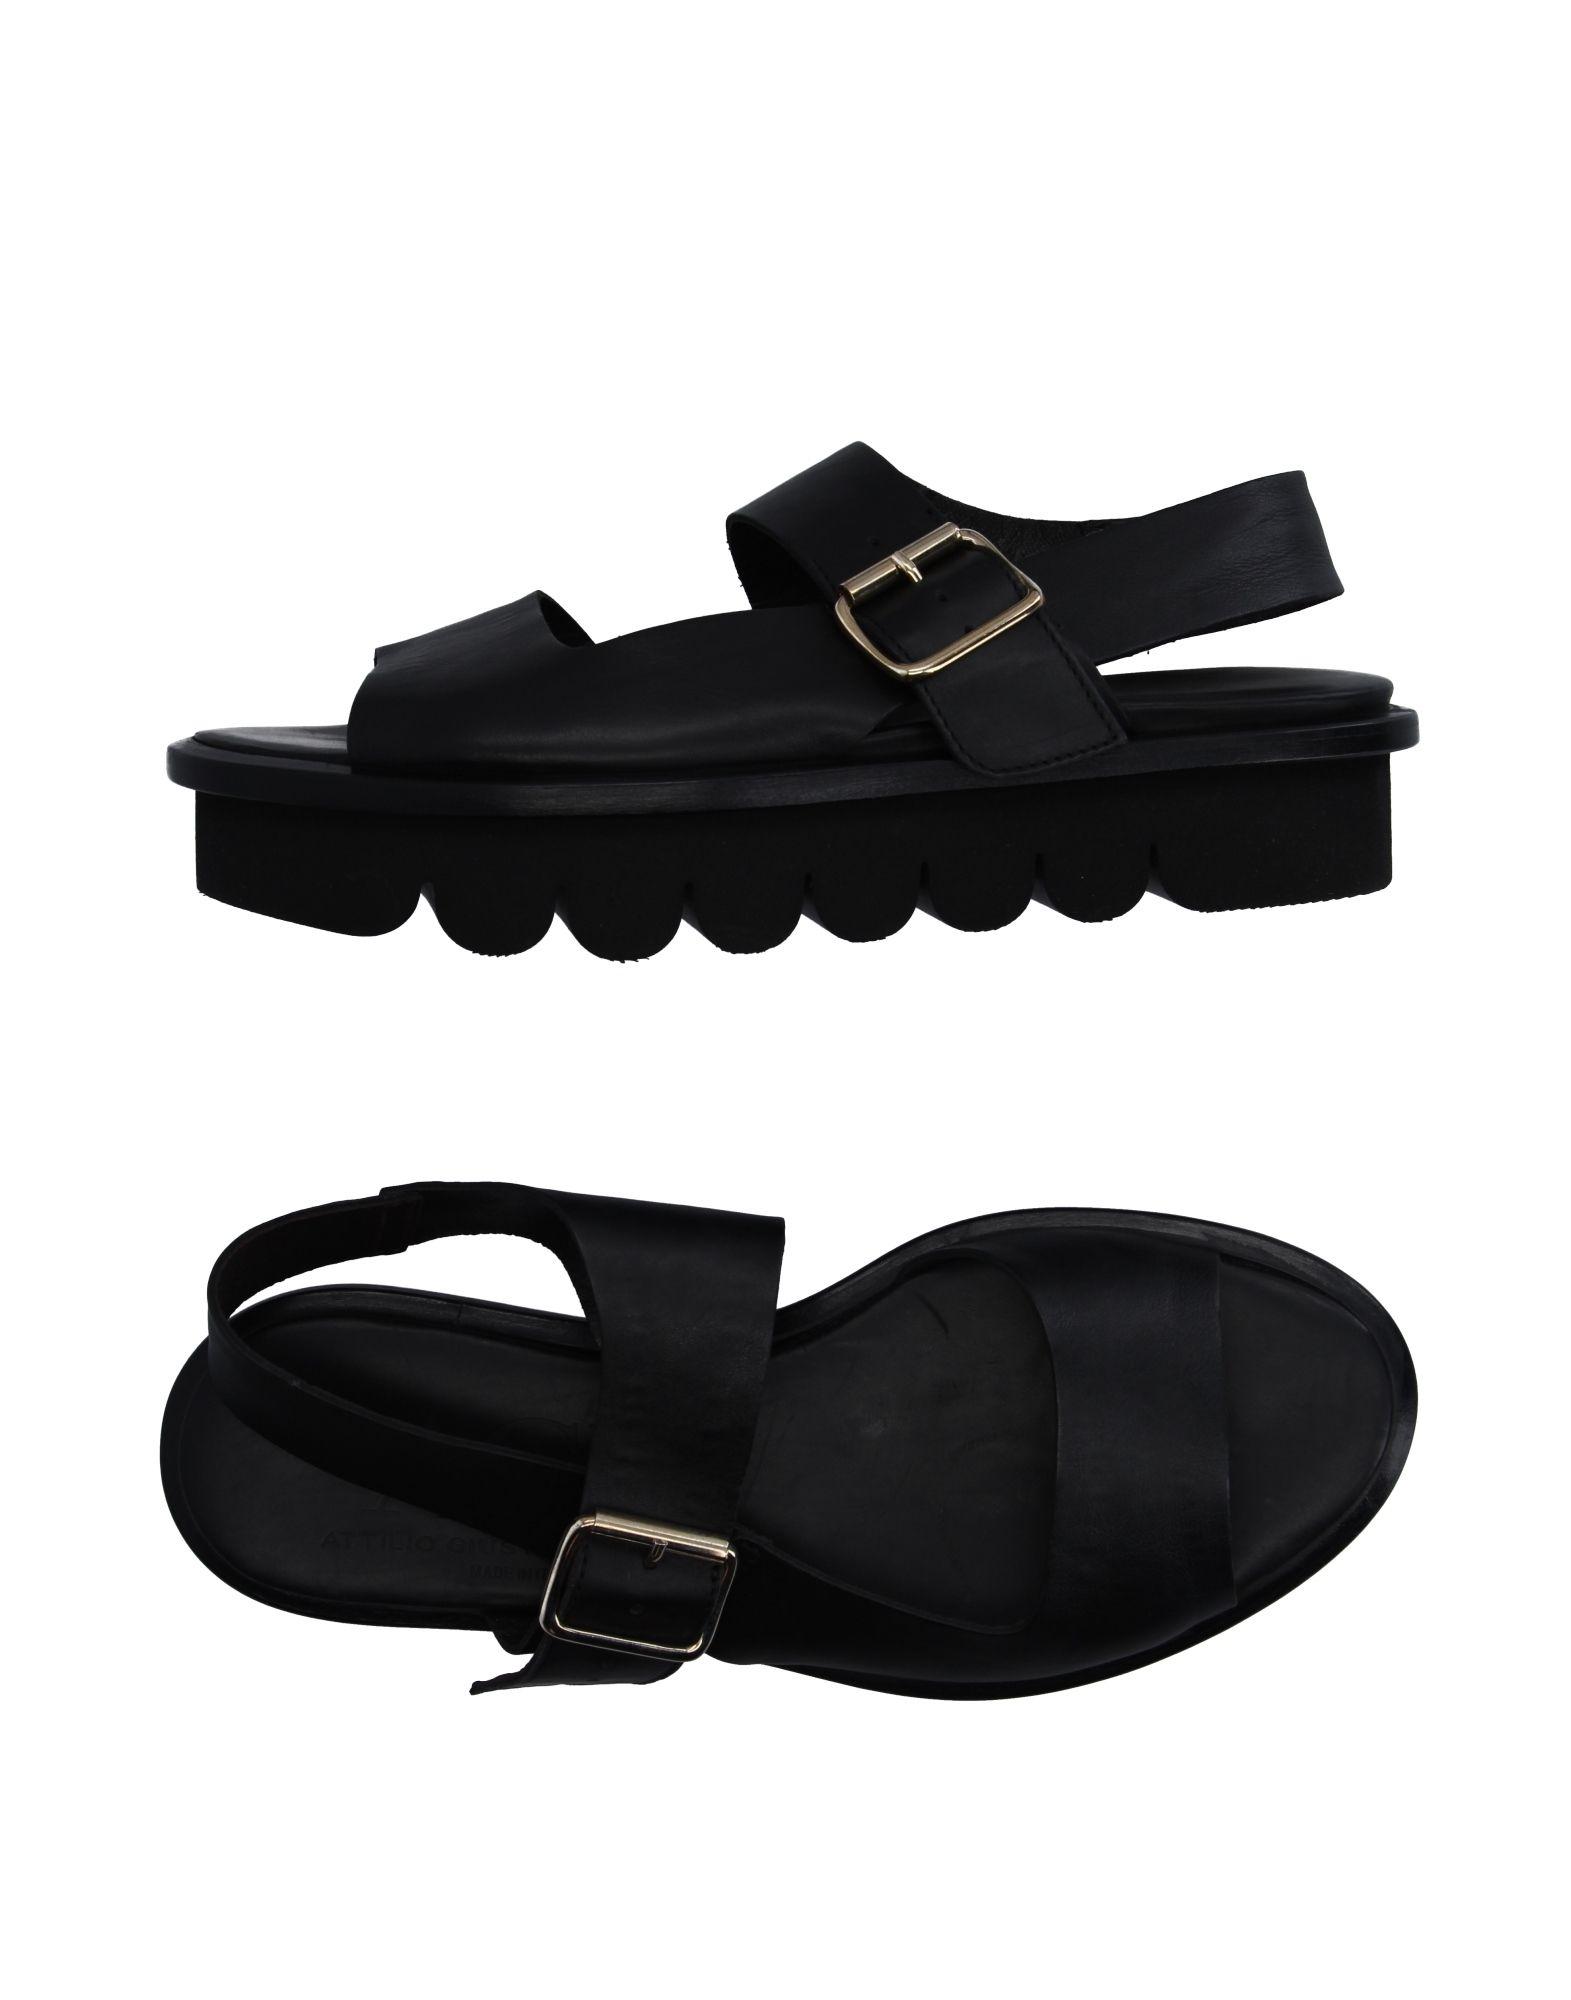 Lyst - Agl attilio giusti leombruni Sandals in Black